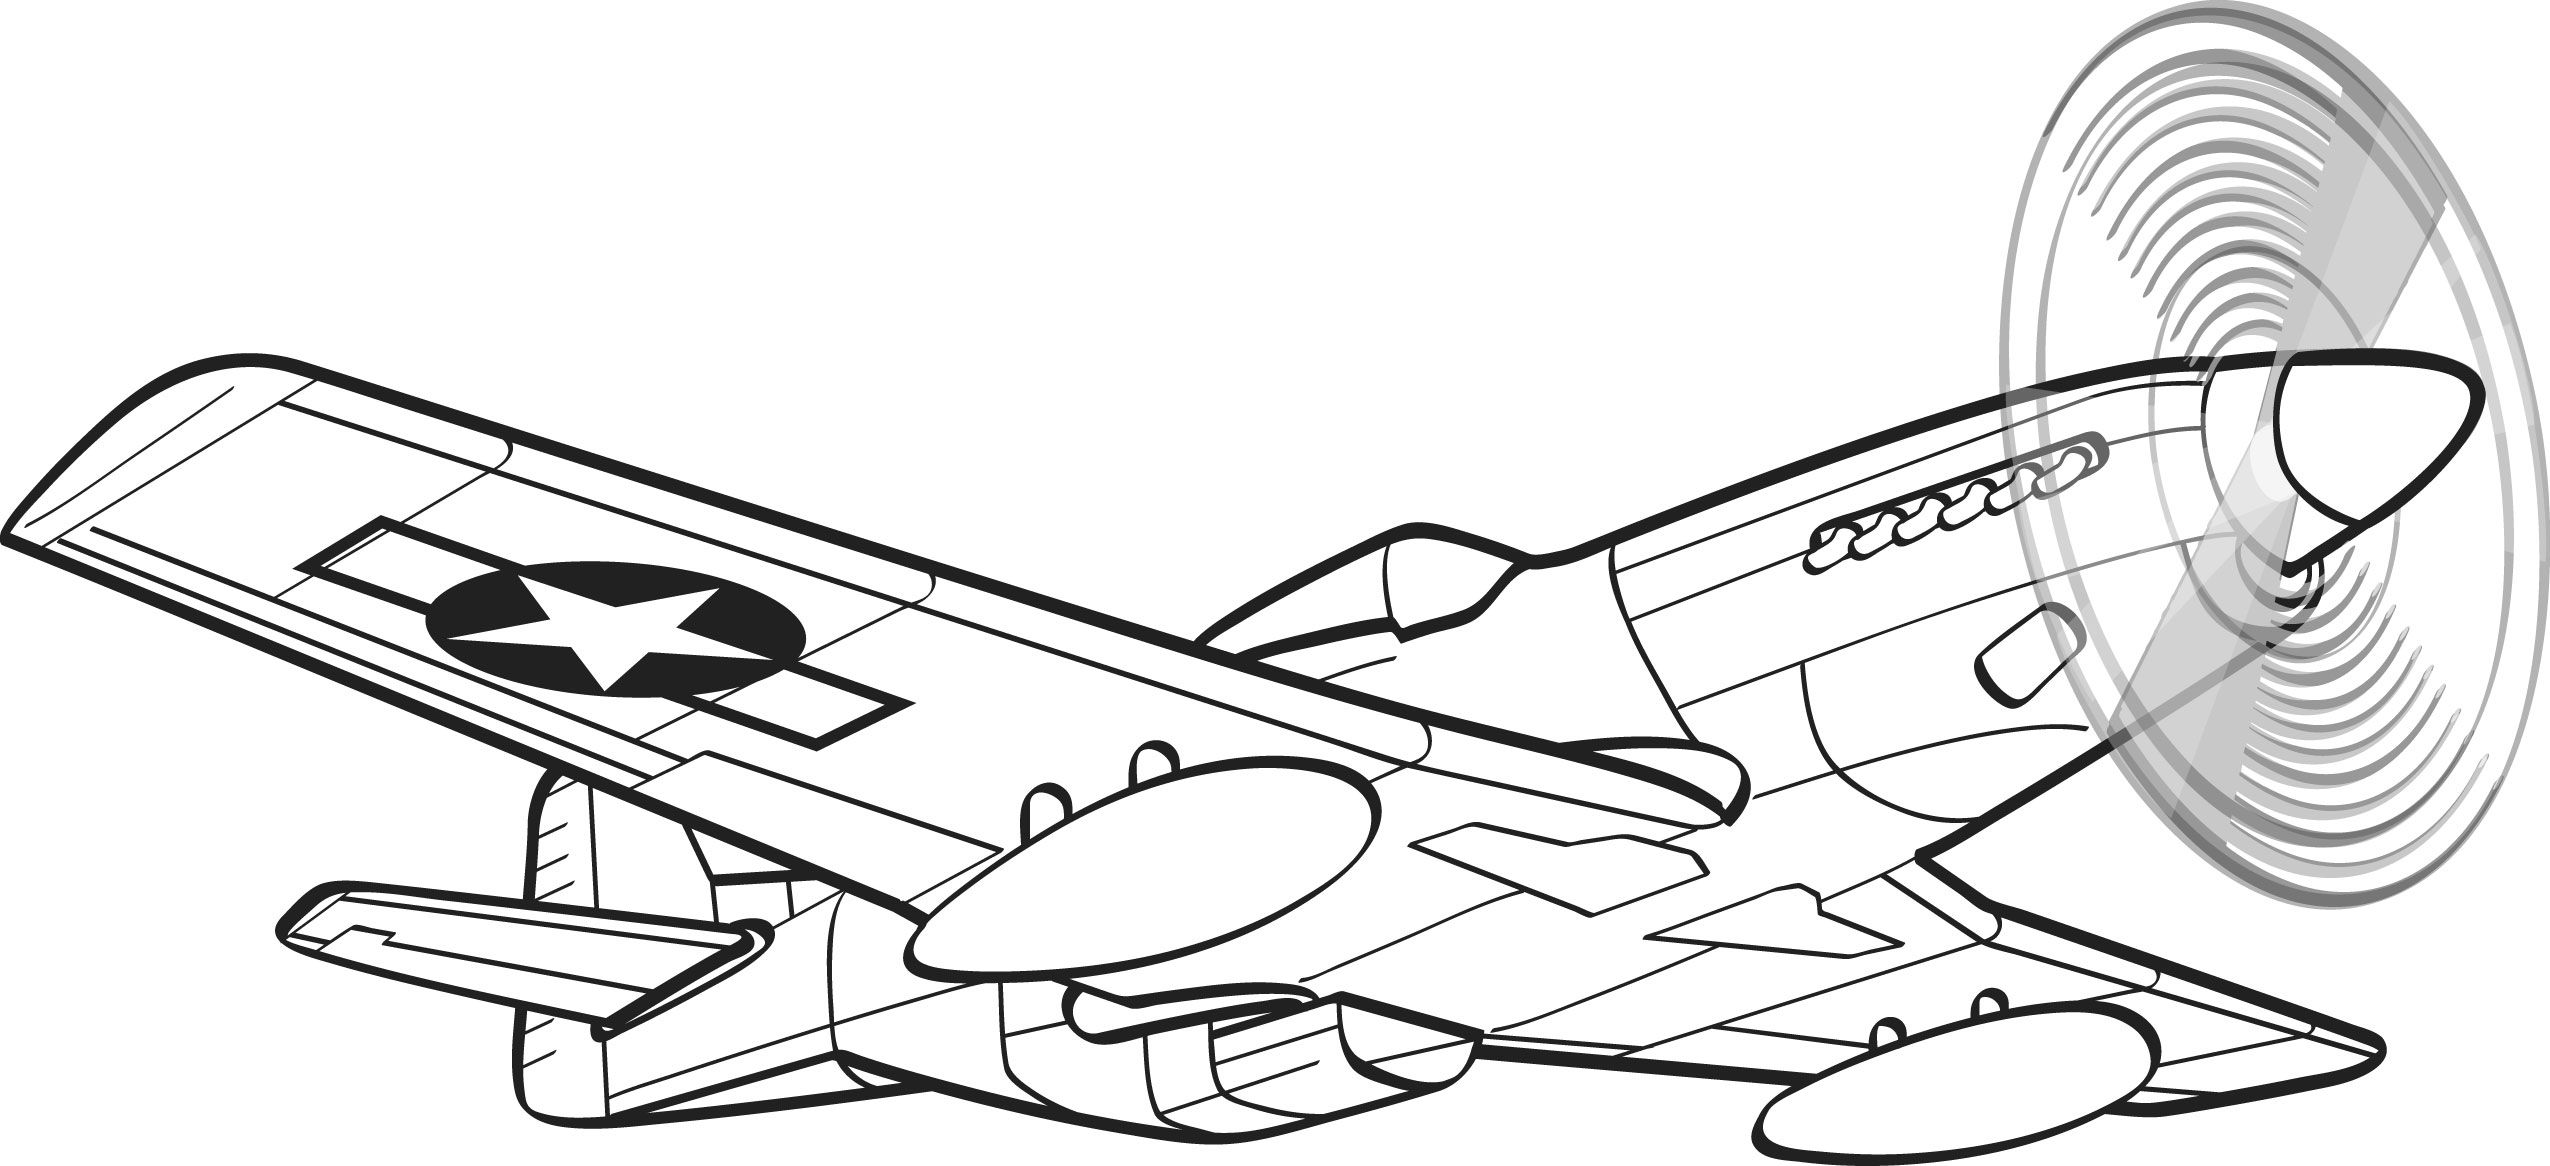 Aircraft Drawing